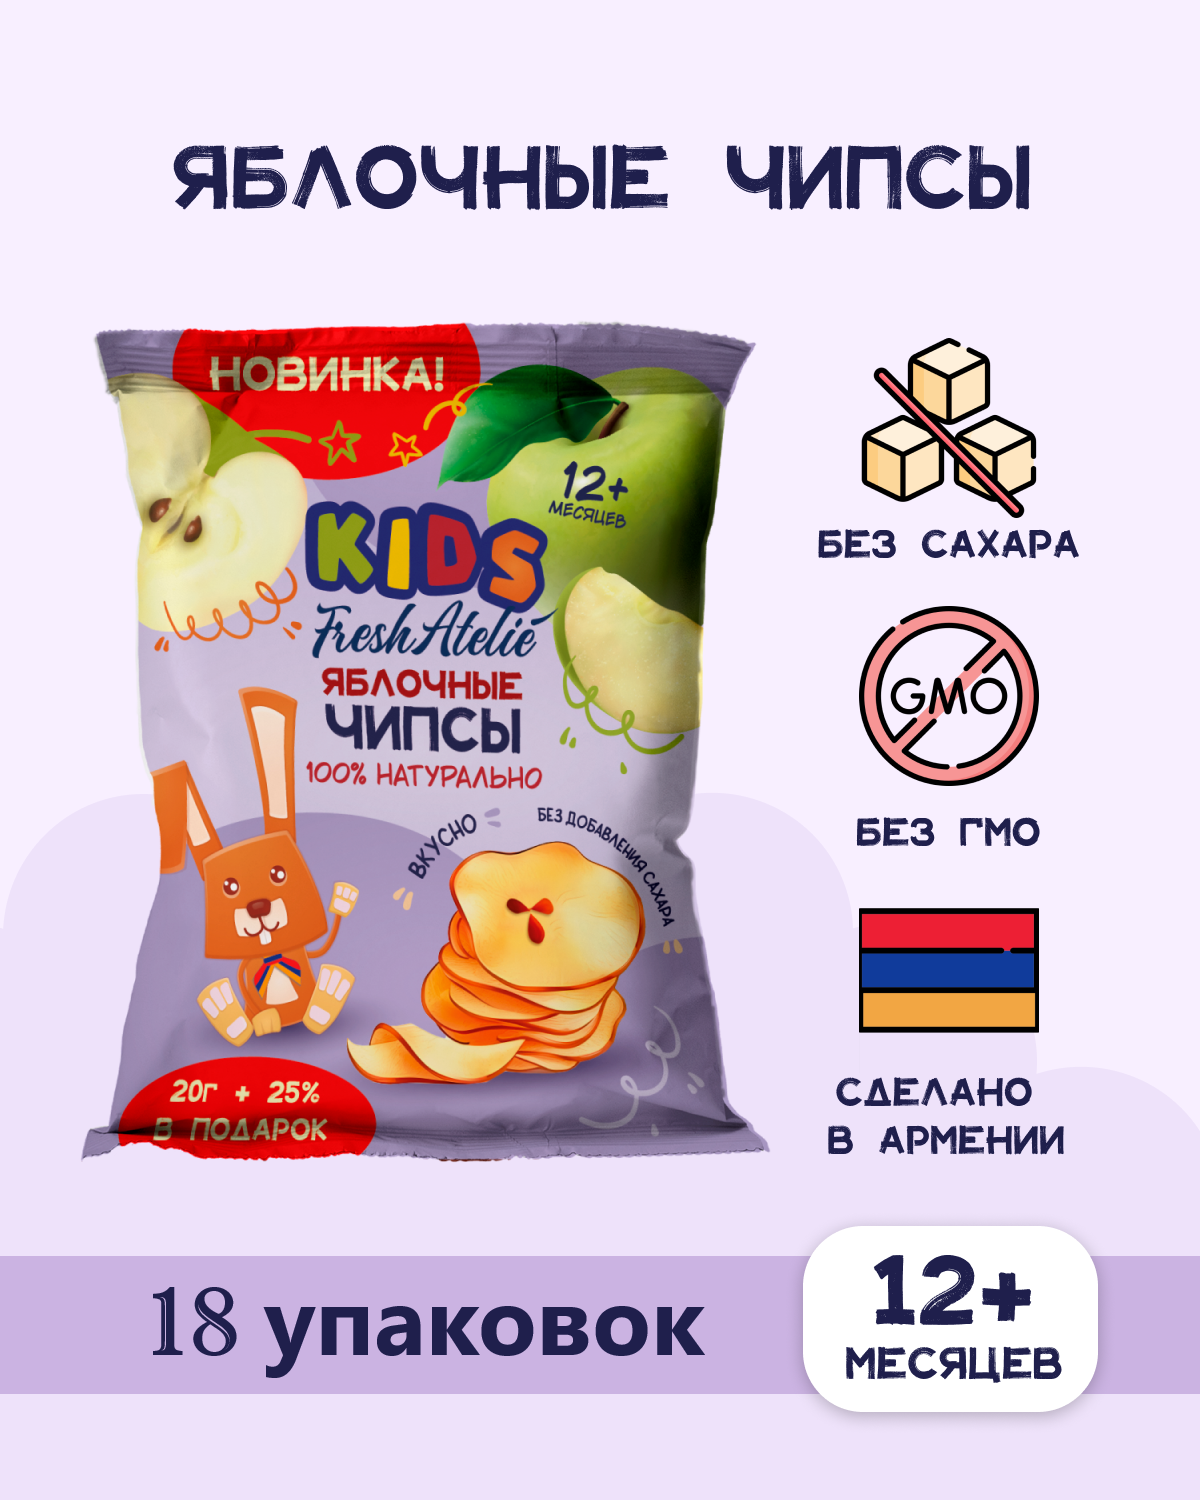 Чипсы яблочные FRESH ATELIE KIDS для детей раннего возраста 20гр + 25%, 18 упаковок